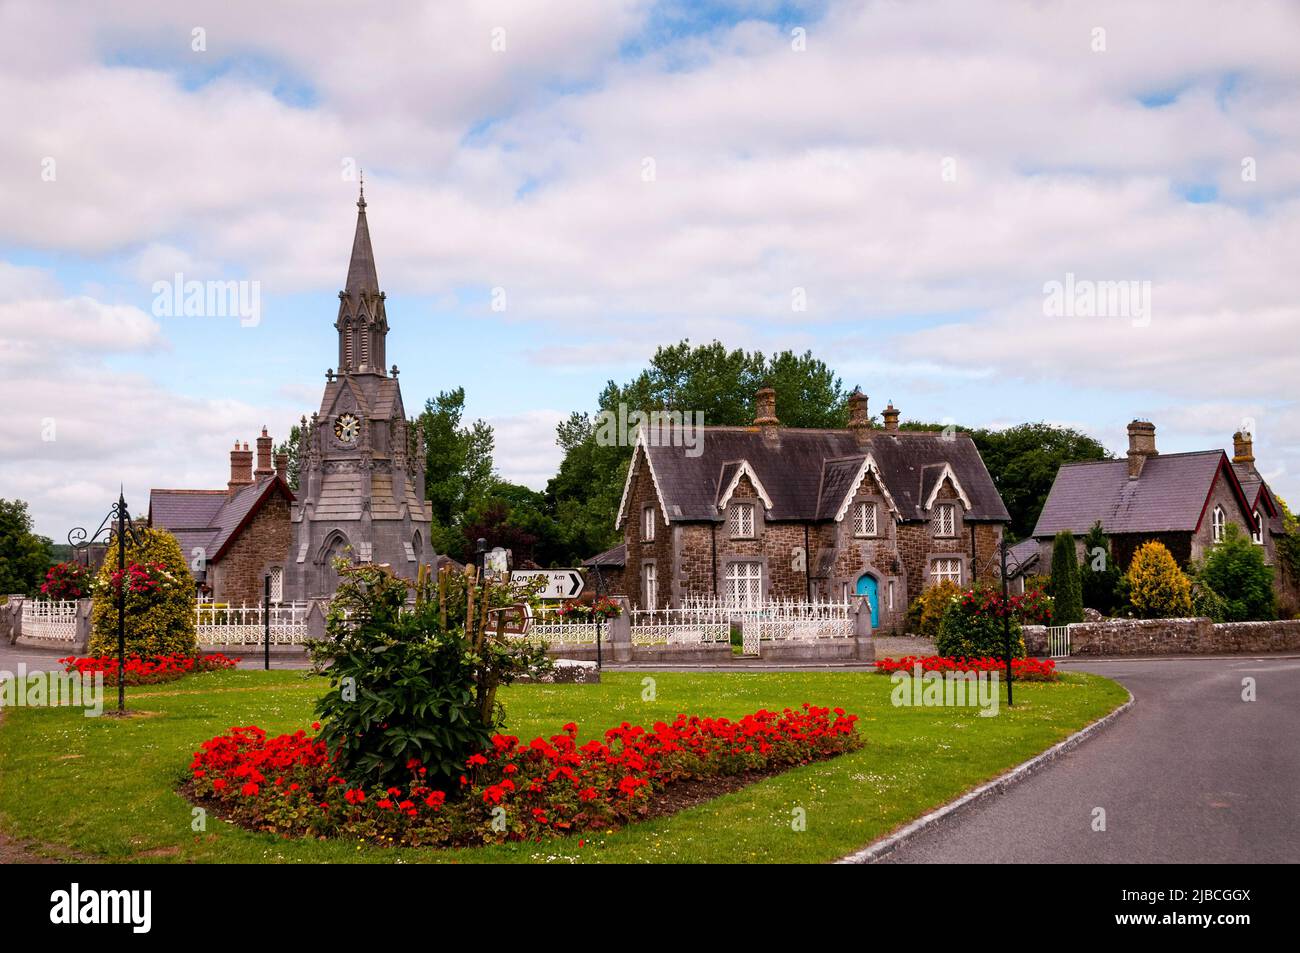 Village Green und gemauerte Steinhäuser von Ardagh, Irland mit einem freistehenden gotischen Uhrenturm. Stockfoto